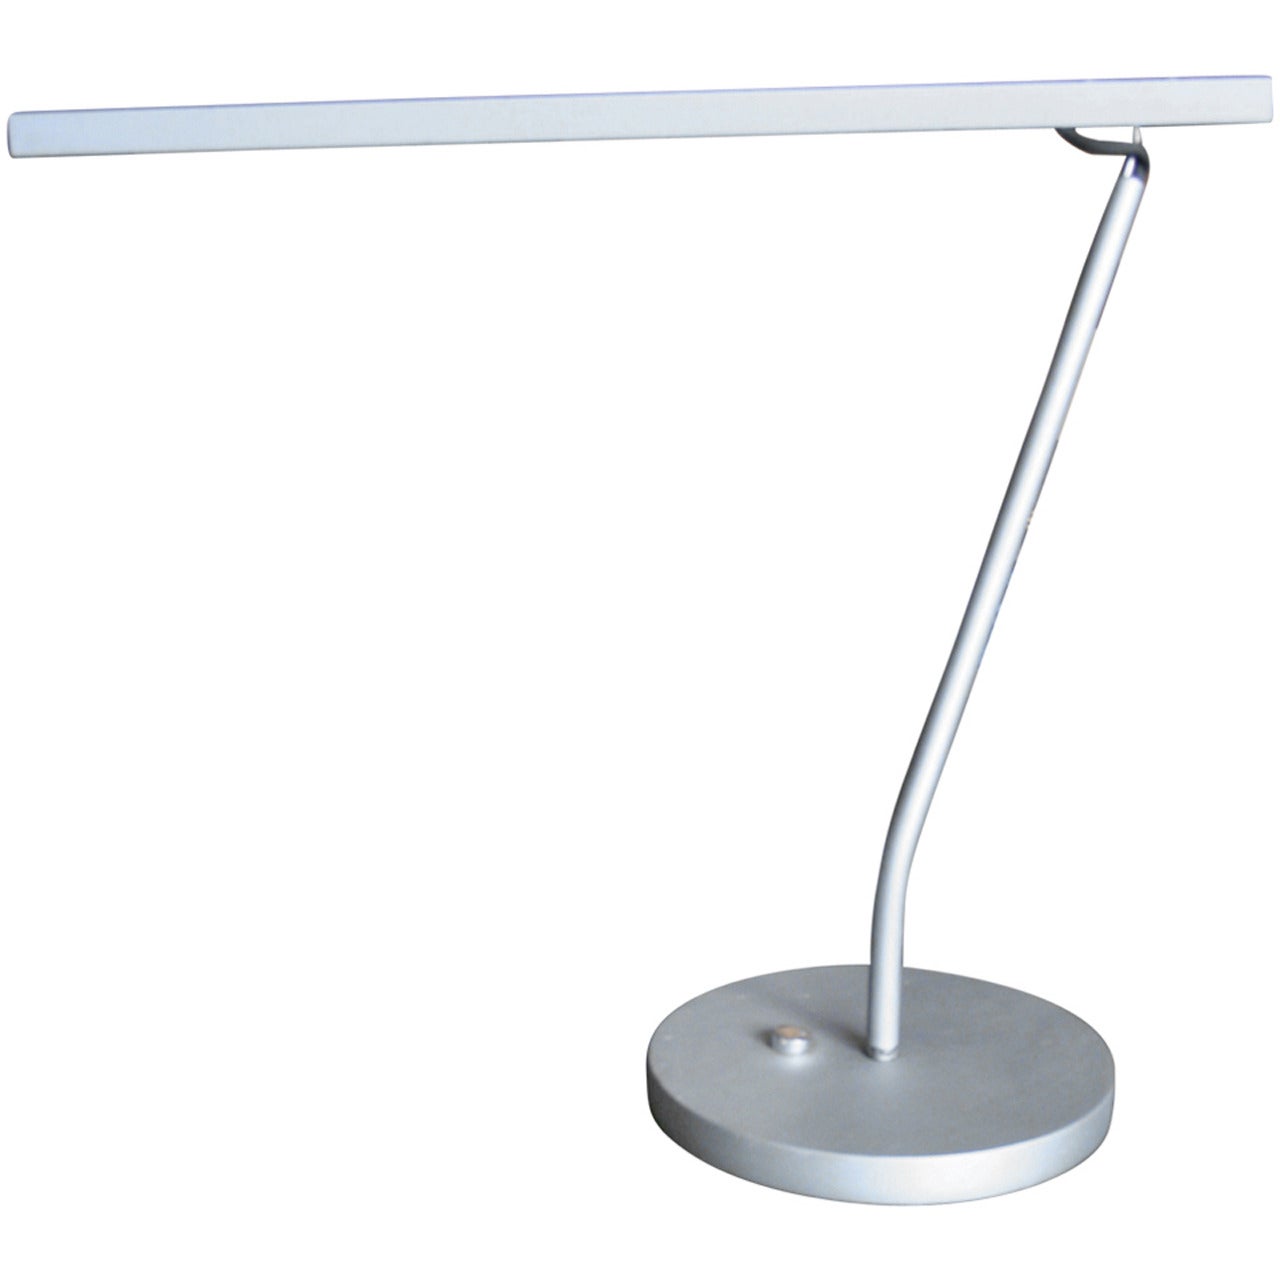 Original Maarten van Severen BA11 Table Lamp by Uline